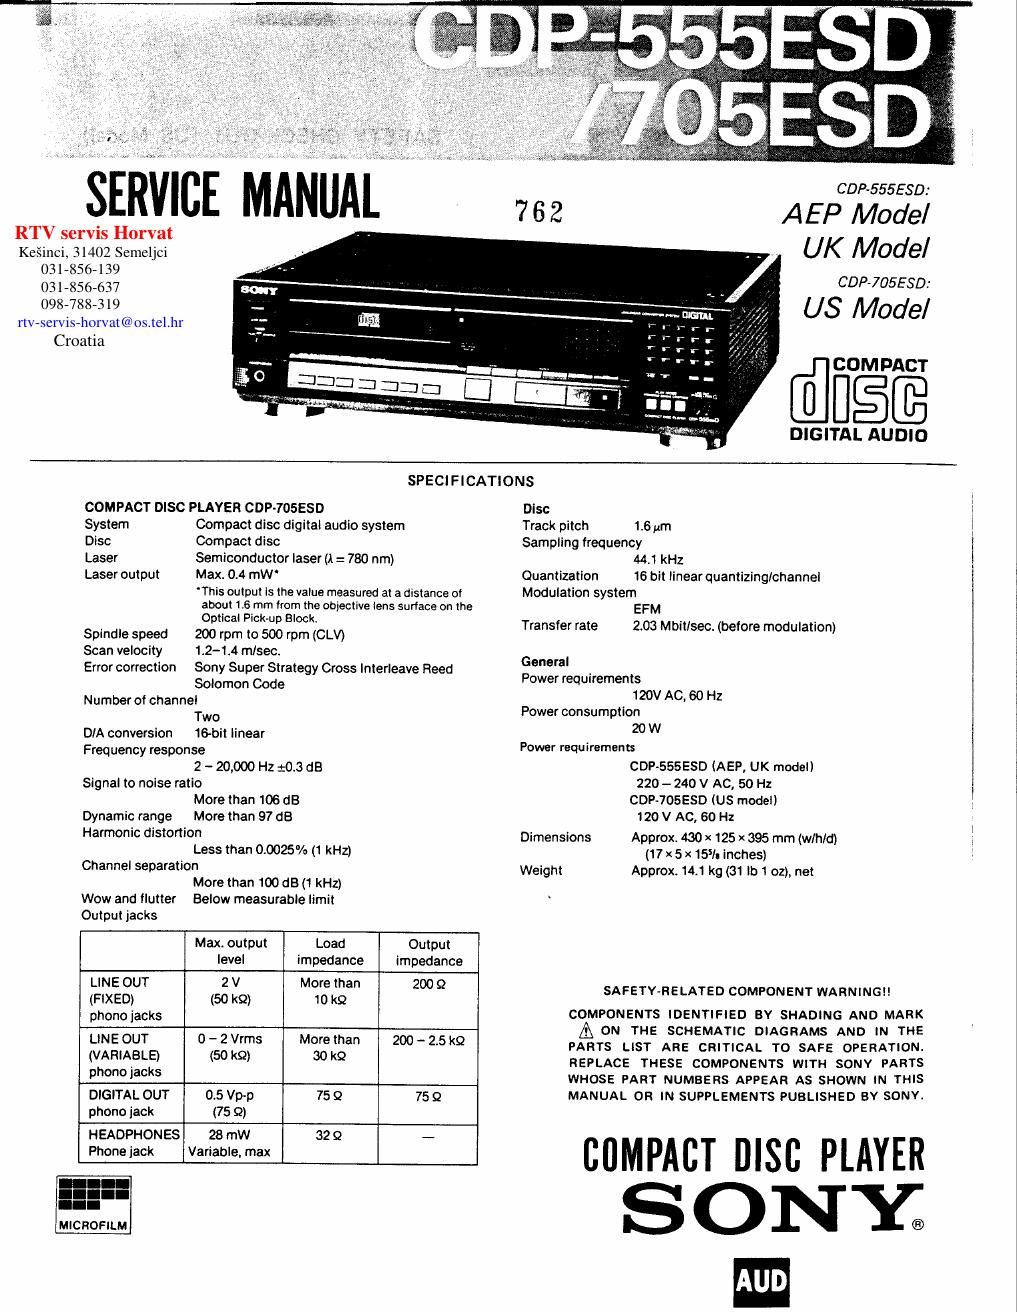 sony cdp 705 esd service manual